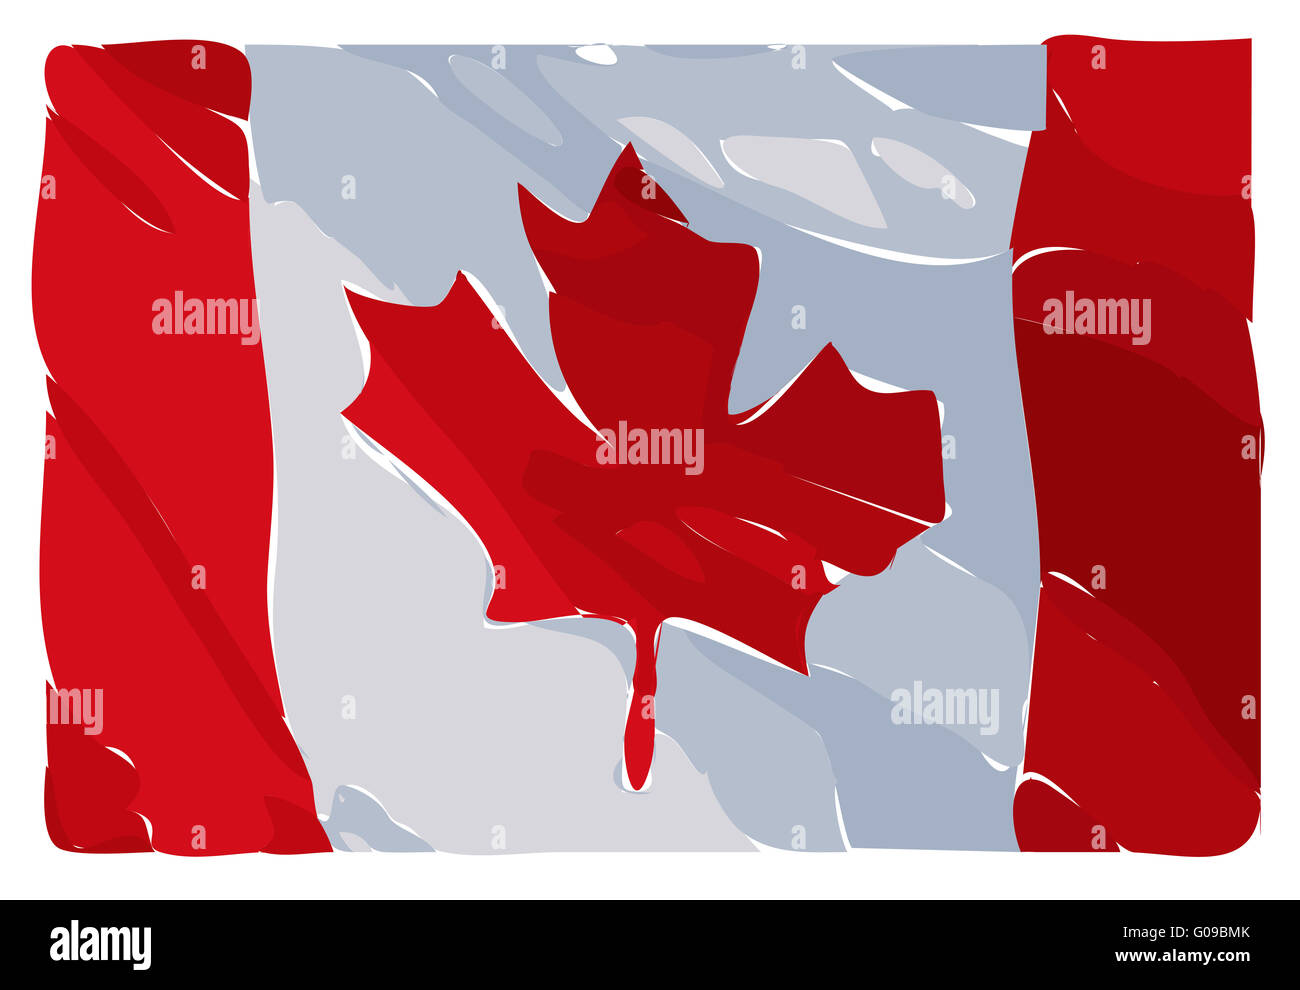 Raster Illustration d'une interprétation artistique du drapeau canadien Banque D'Images